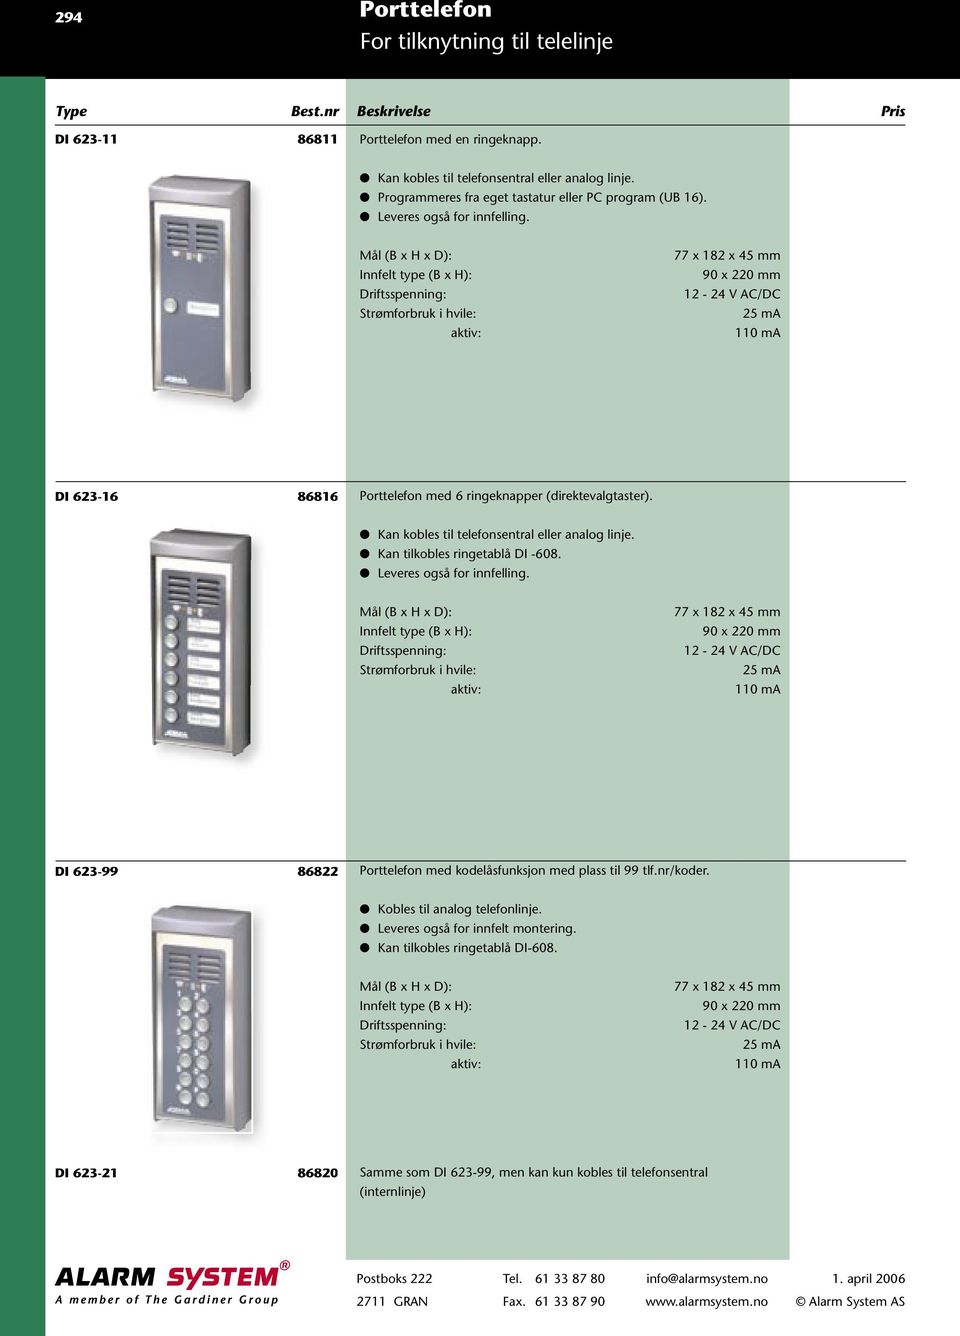 Kan tilkobles ringetablå DI -608. Leveres også for innfelling. Innfelt type (B x H): 90 x 220 mm 25 ma 110 ma DI 623-99 86822 Porttelefon med kodelåsfunksjon med plass til 99 tlf.nr/koder.